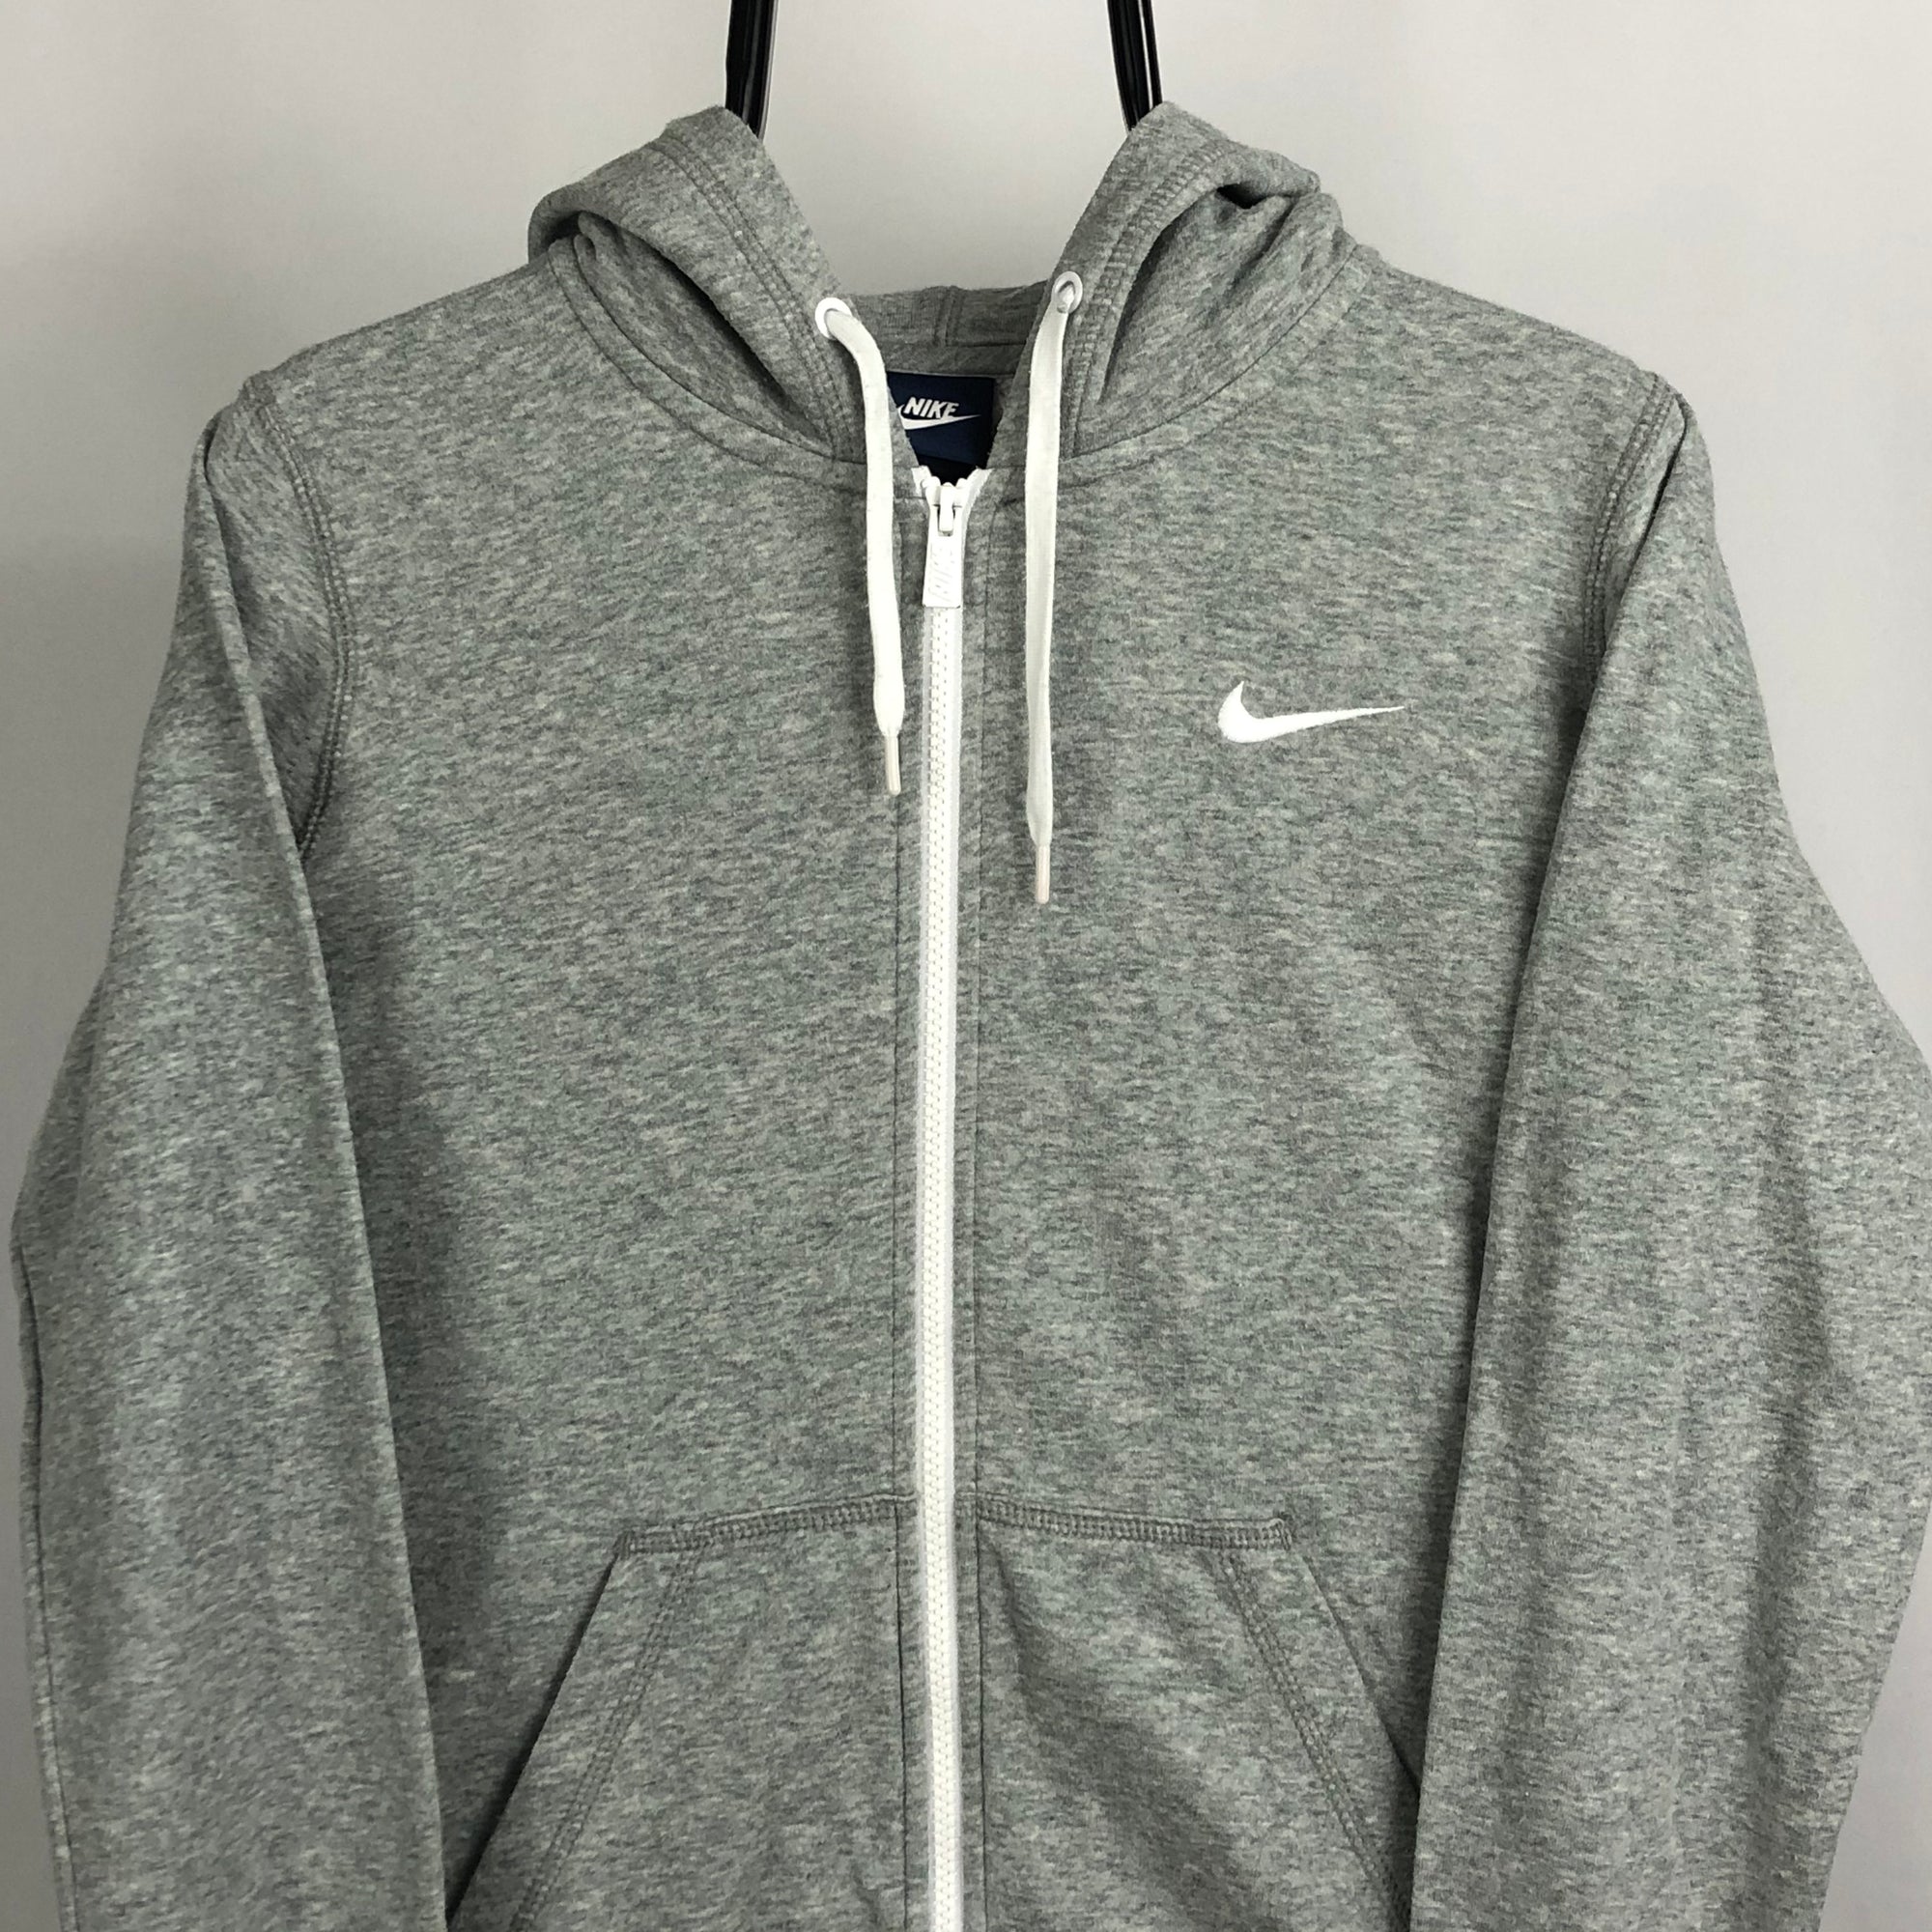 Nike Embroidered Swoosh Zip Hoodie in Grey - Men's Small/Women's Medium